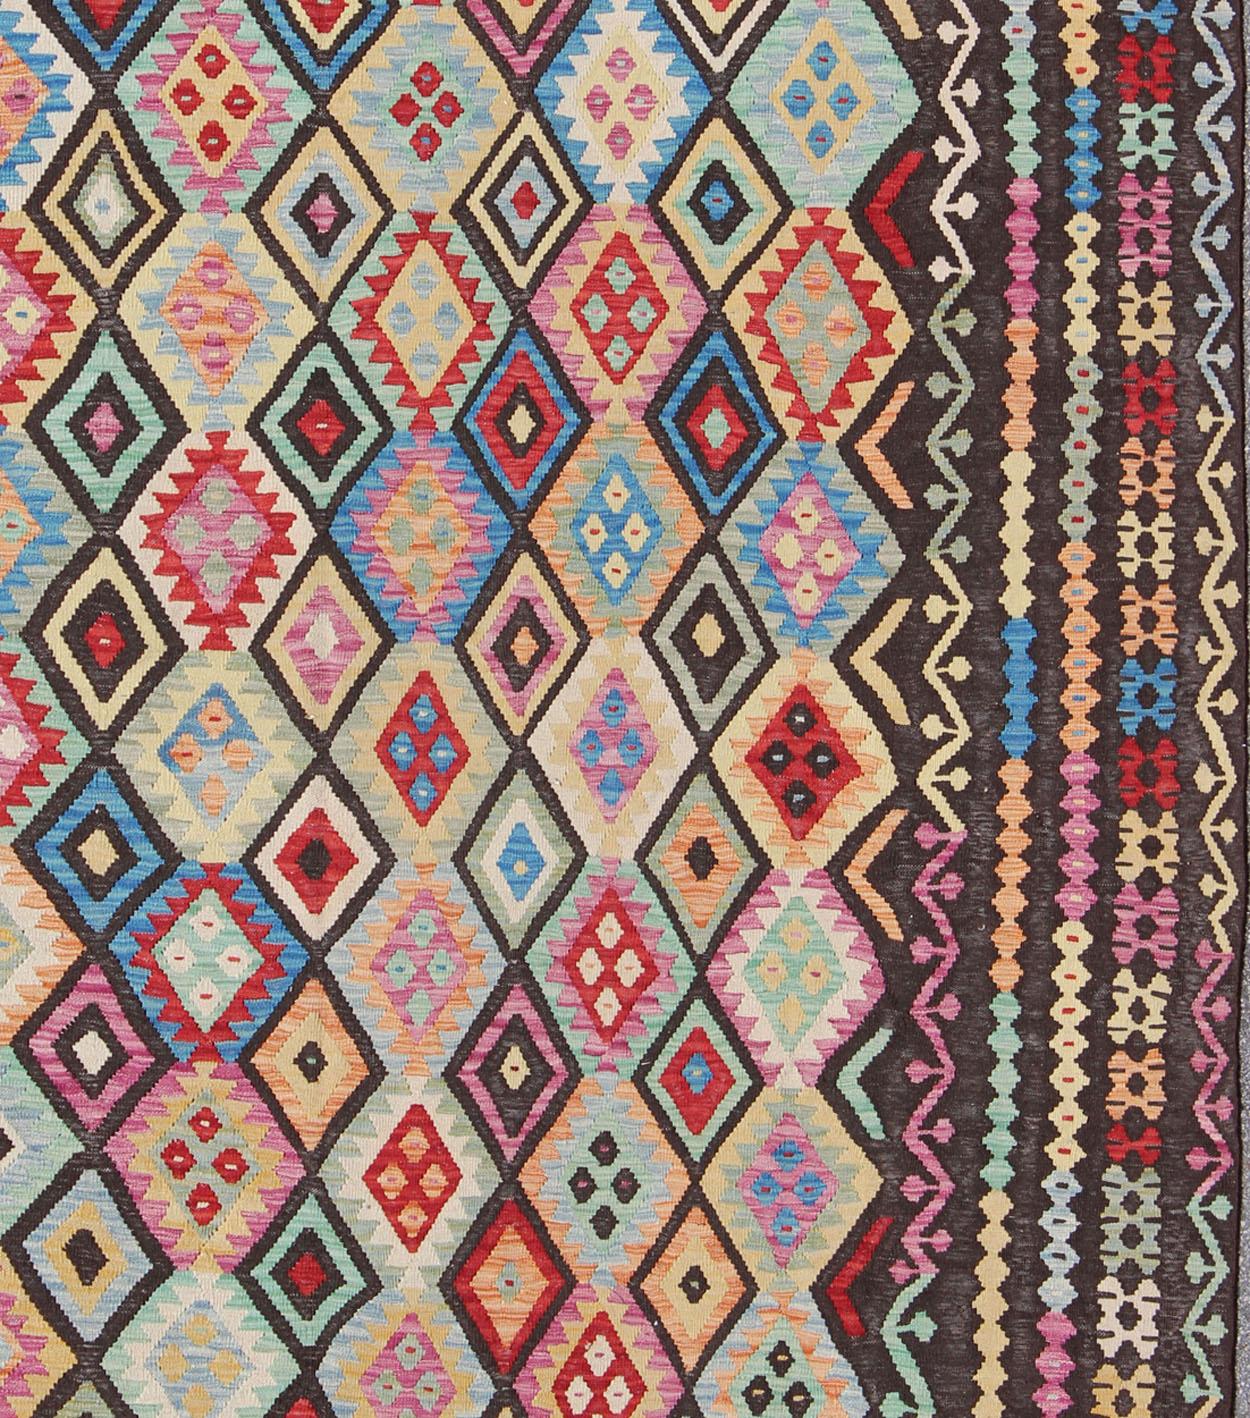 Bunter Stammes-Kilim im Vintage-Stil, Teppich ABT-8120937, Herkunftsland / Art: Afghanistan / Kilim, etwa Ende des 20. Jahrhunderts. Keivan Woven Arts, Afghanischer Kelim-Teppich. 

Dieser flachgewebte Kelimteppich aus Afghanistan zeichnet sich